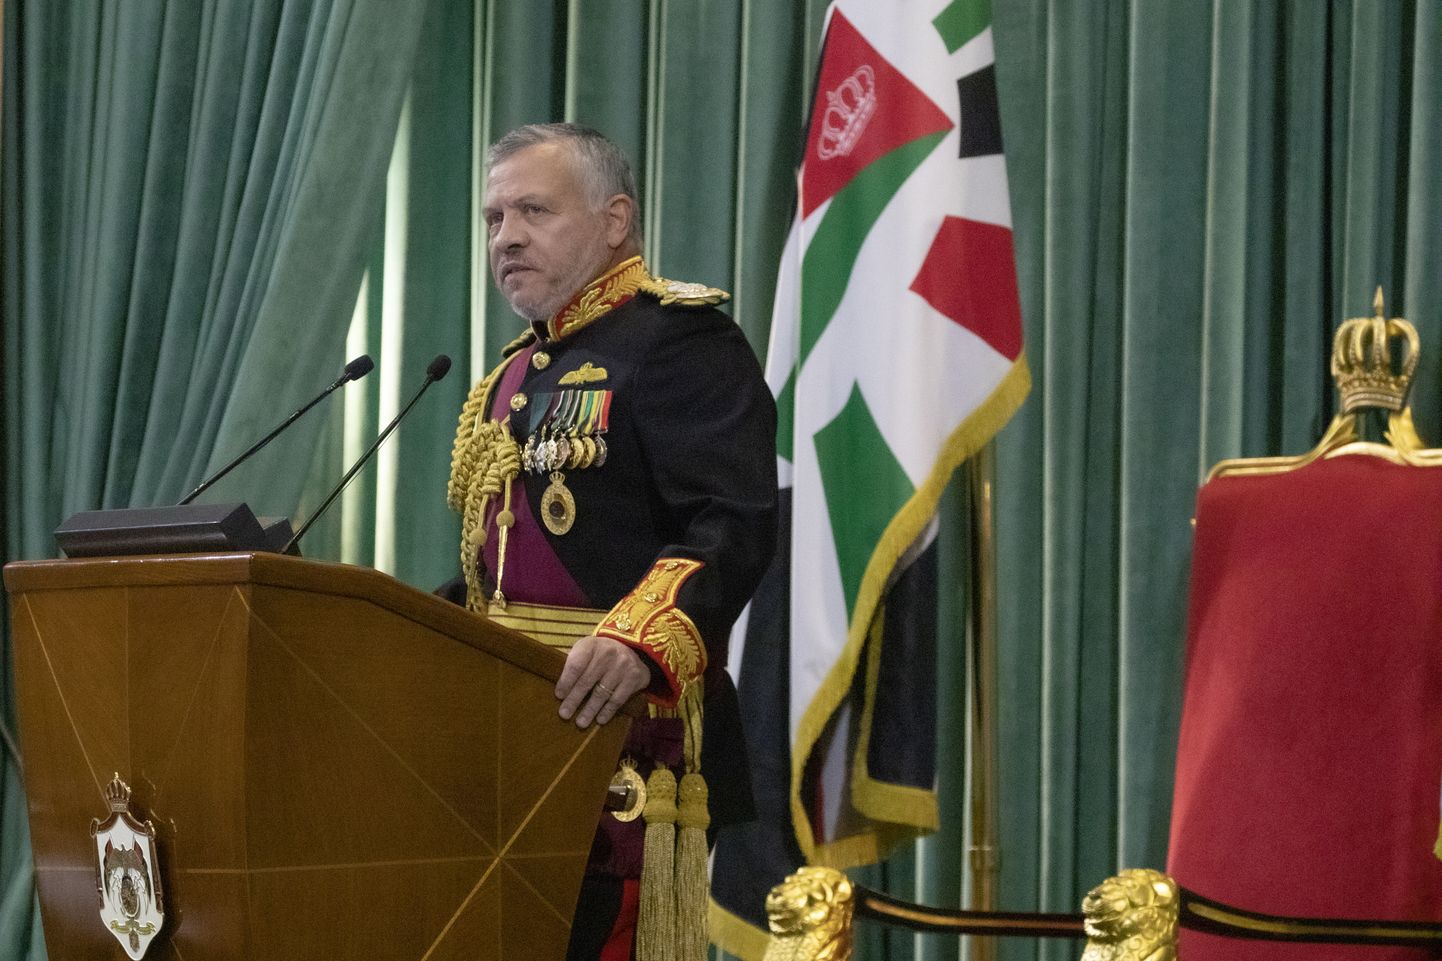 Jordaania kuningas Abdullah II pühapäeval parlamendis aastakõnet pidamas.